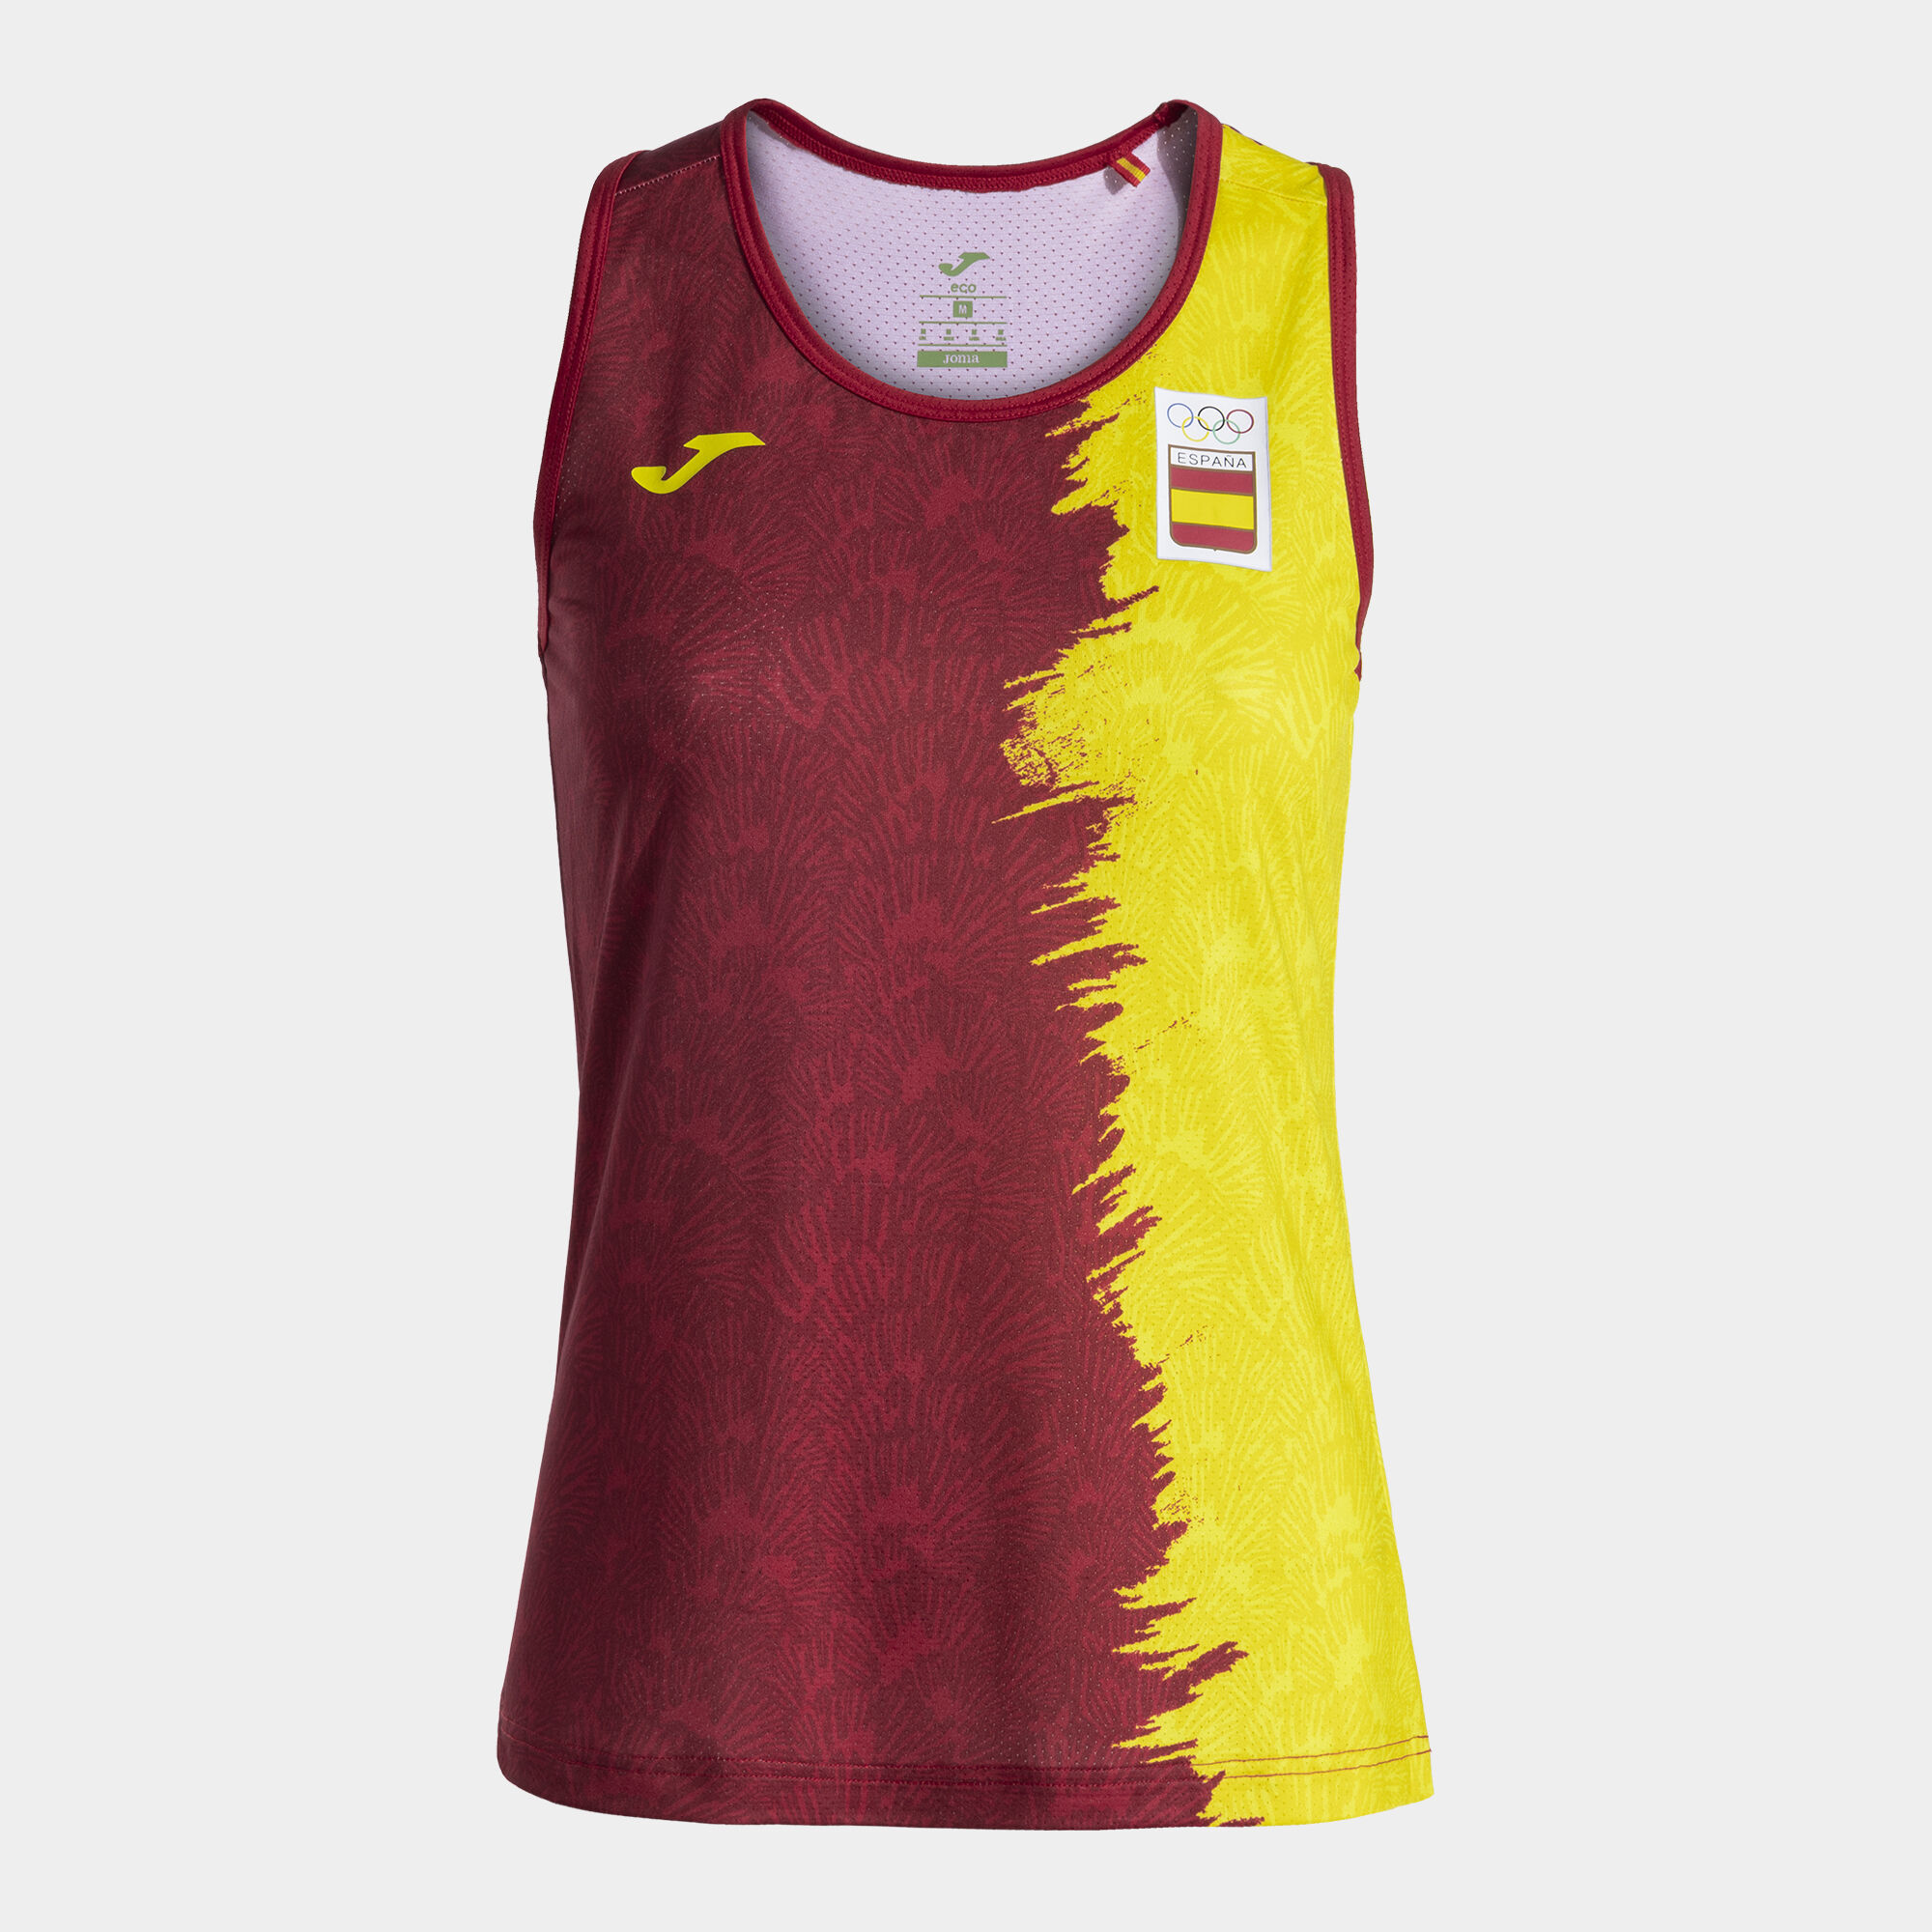 Camiseta tirantes paseo Comité Olímpico Español mujer